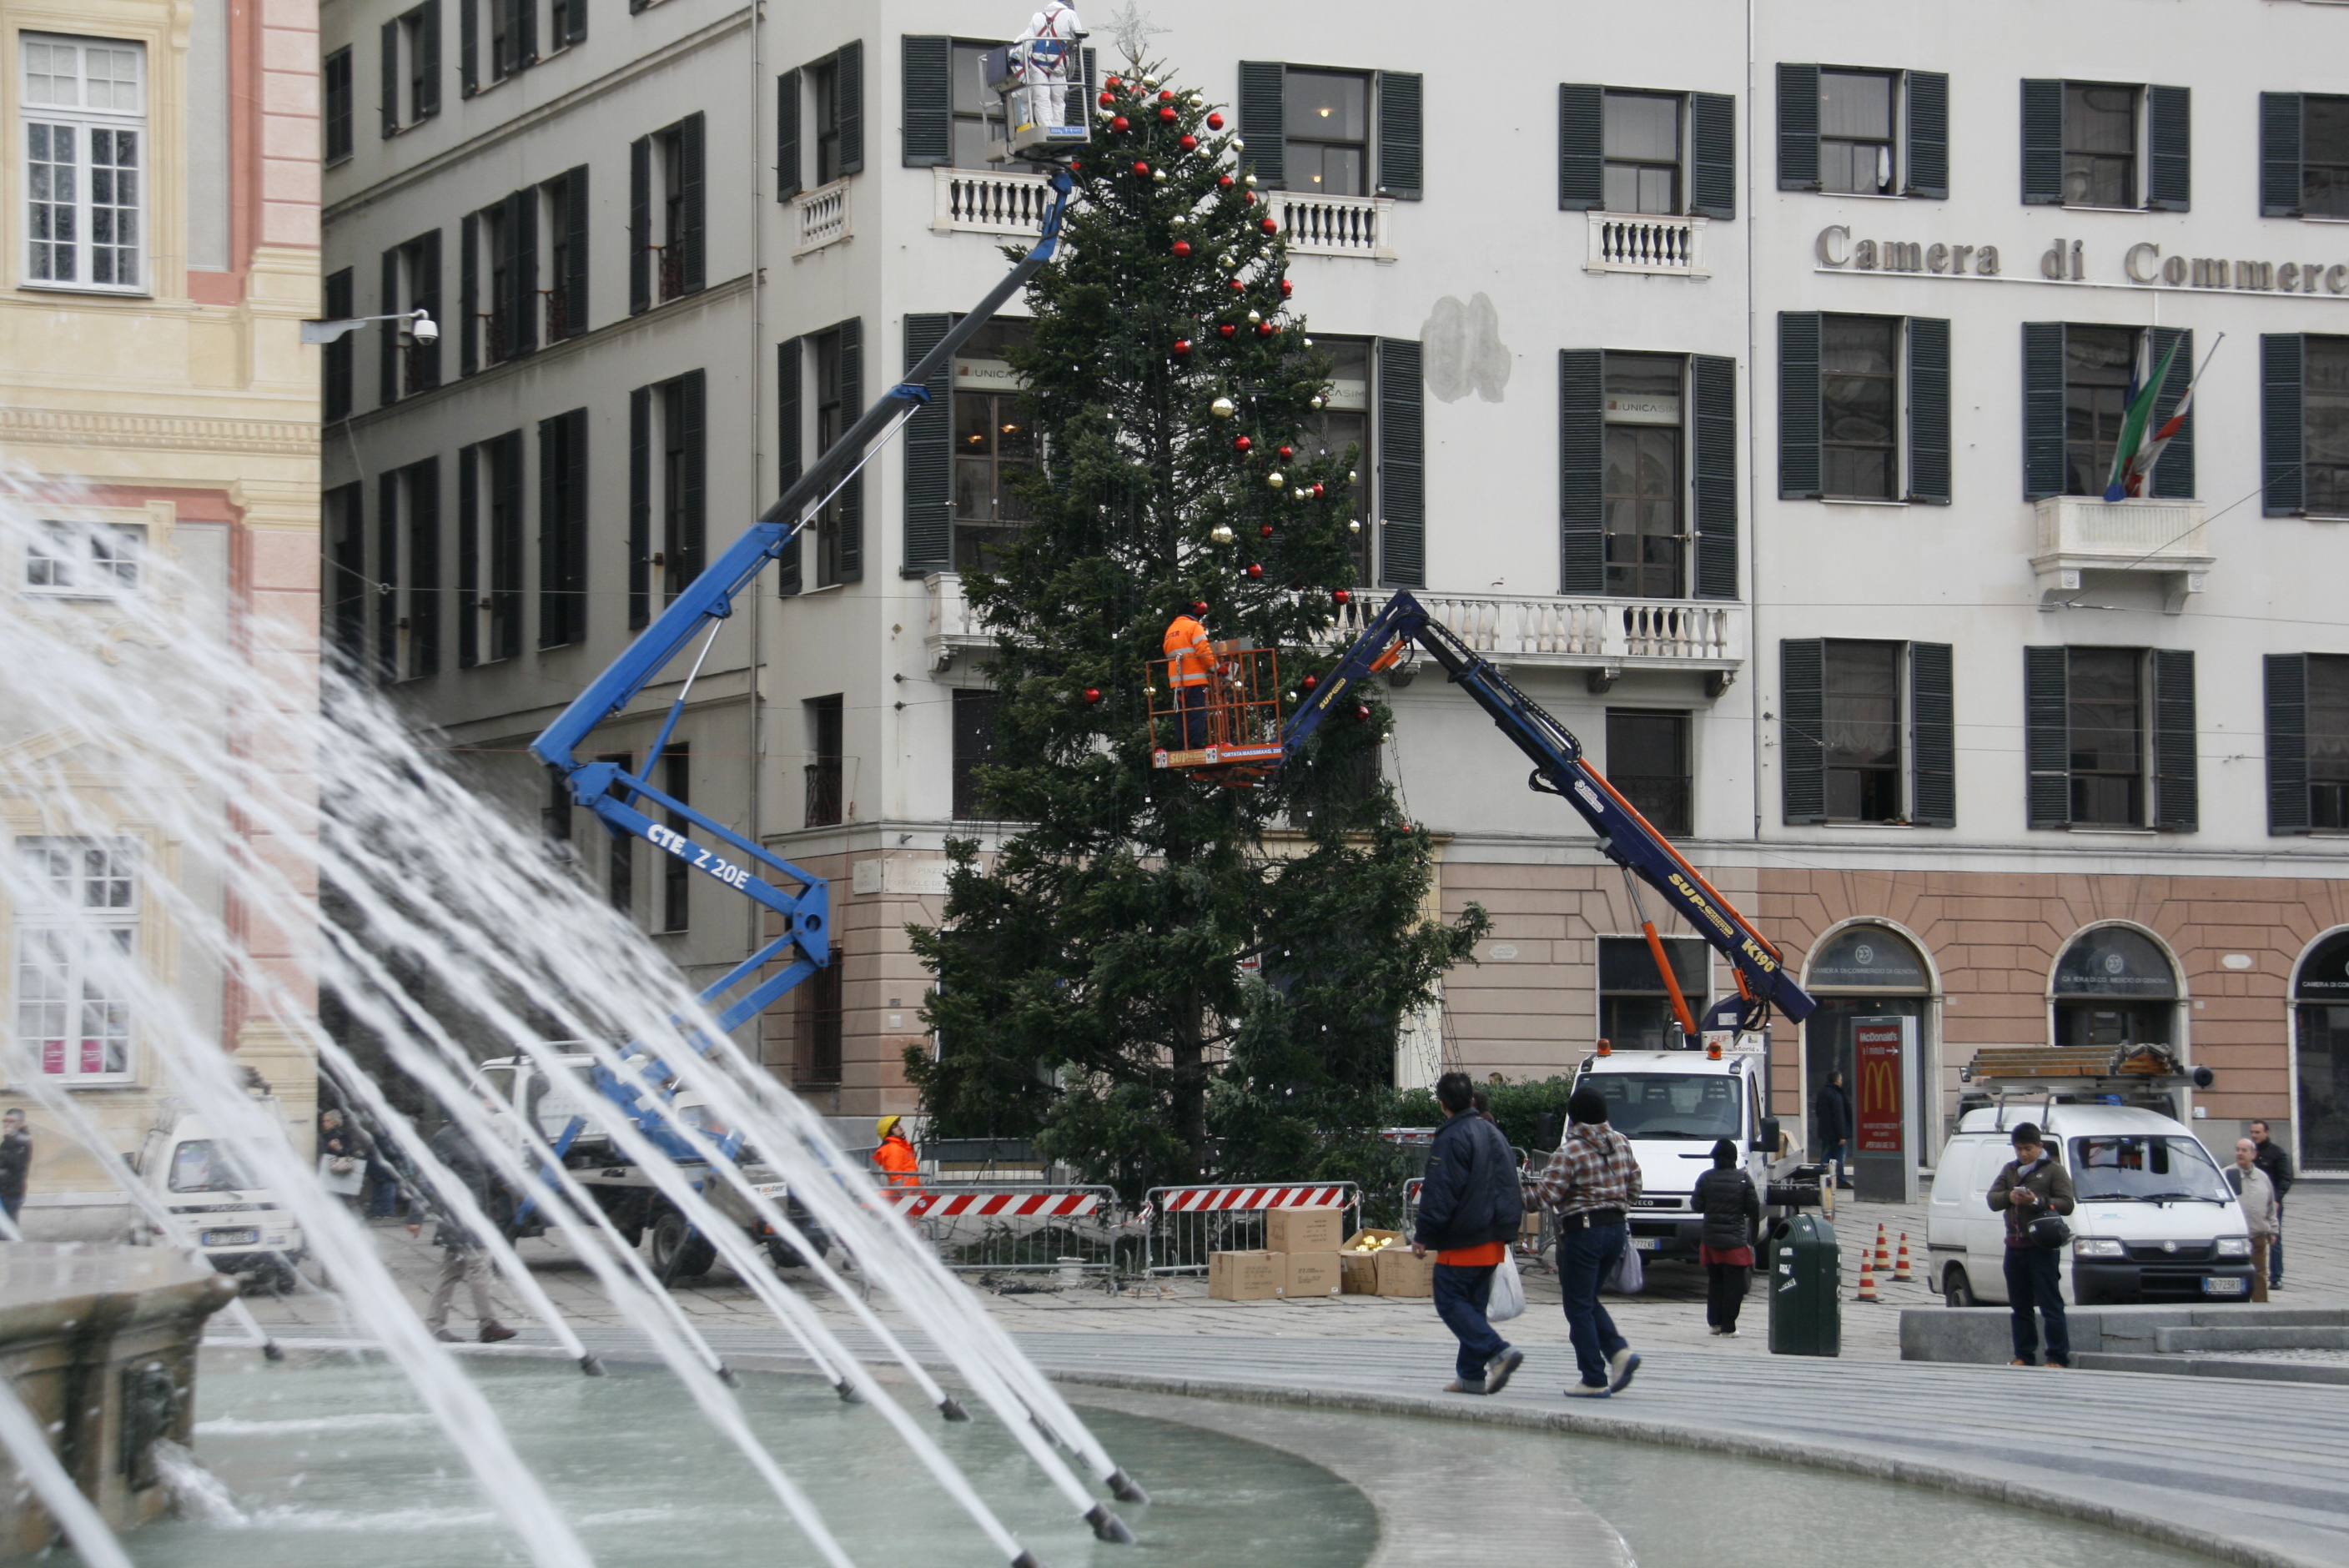 Accensione dell'albero di Natale in Piazza De Ferrari